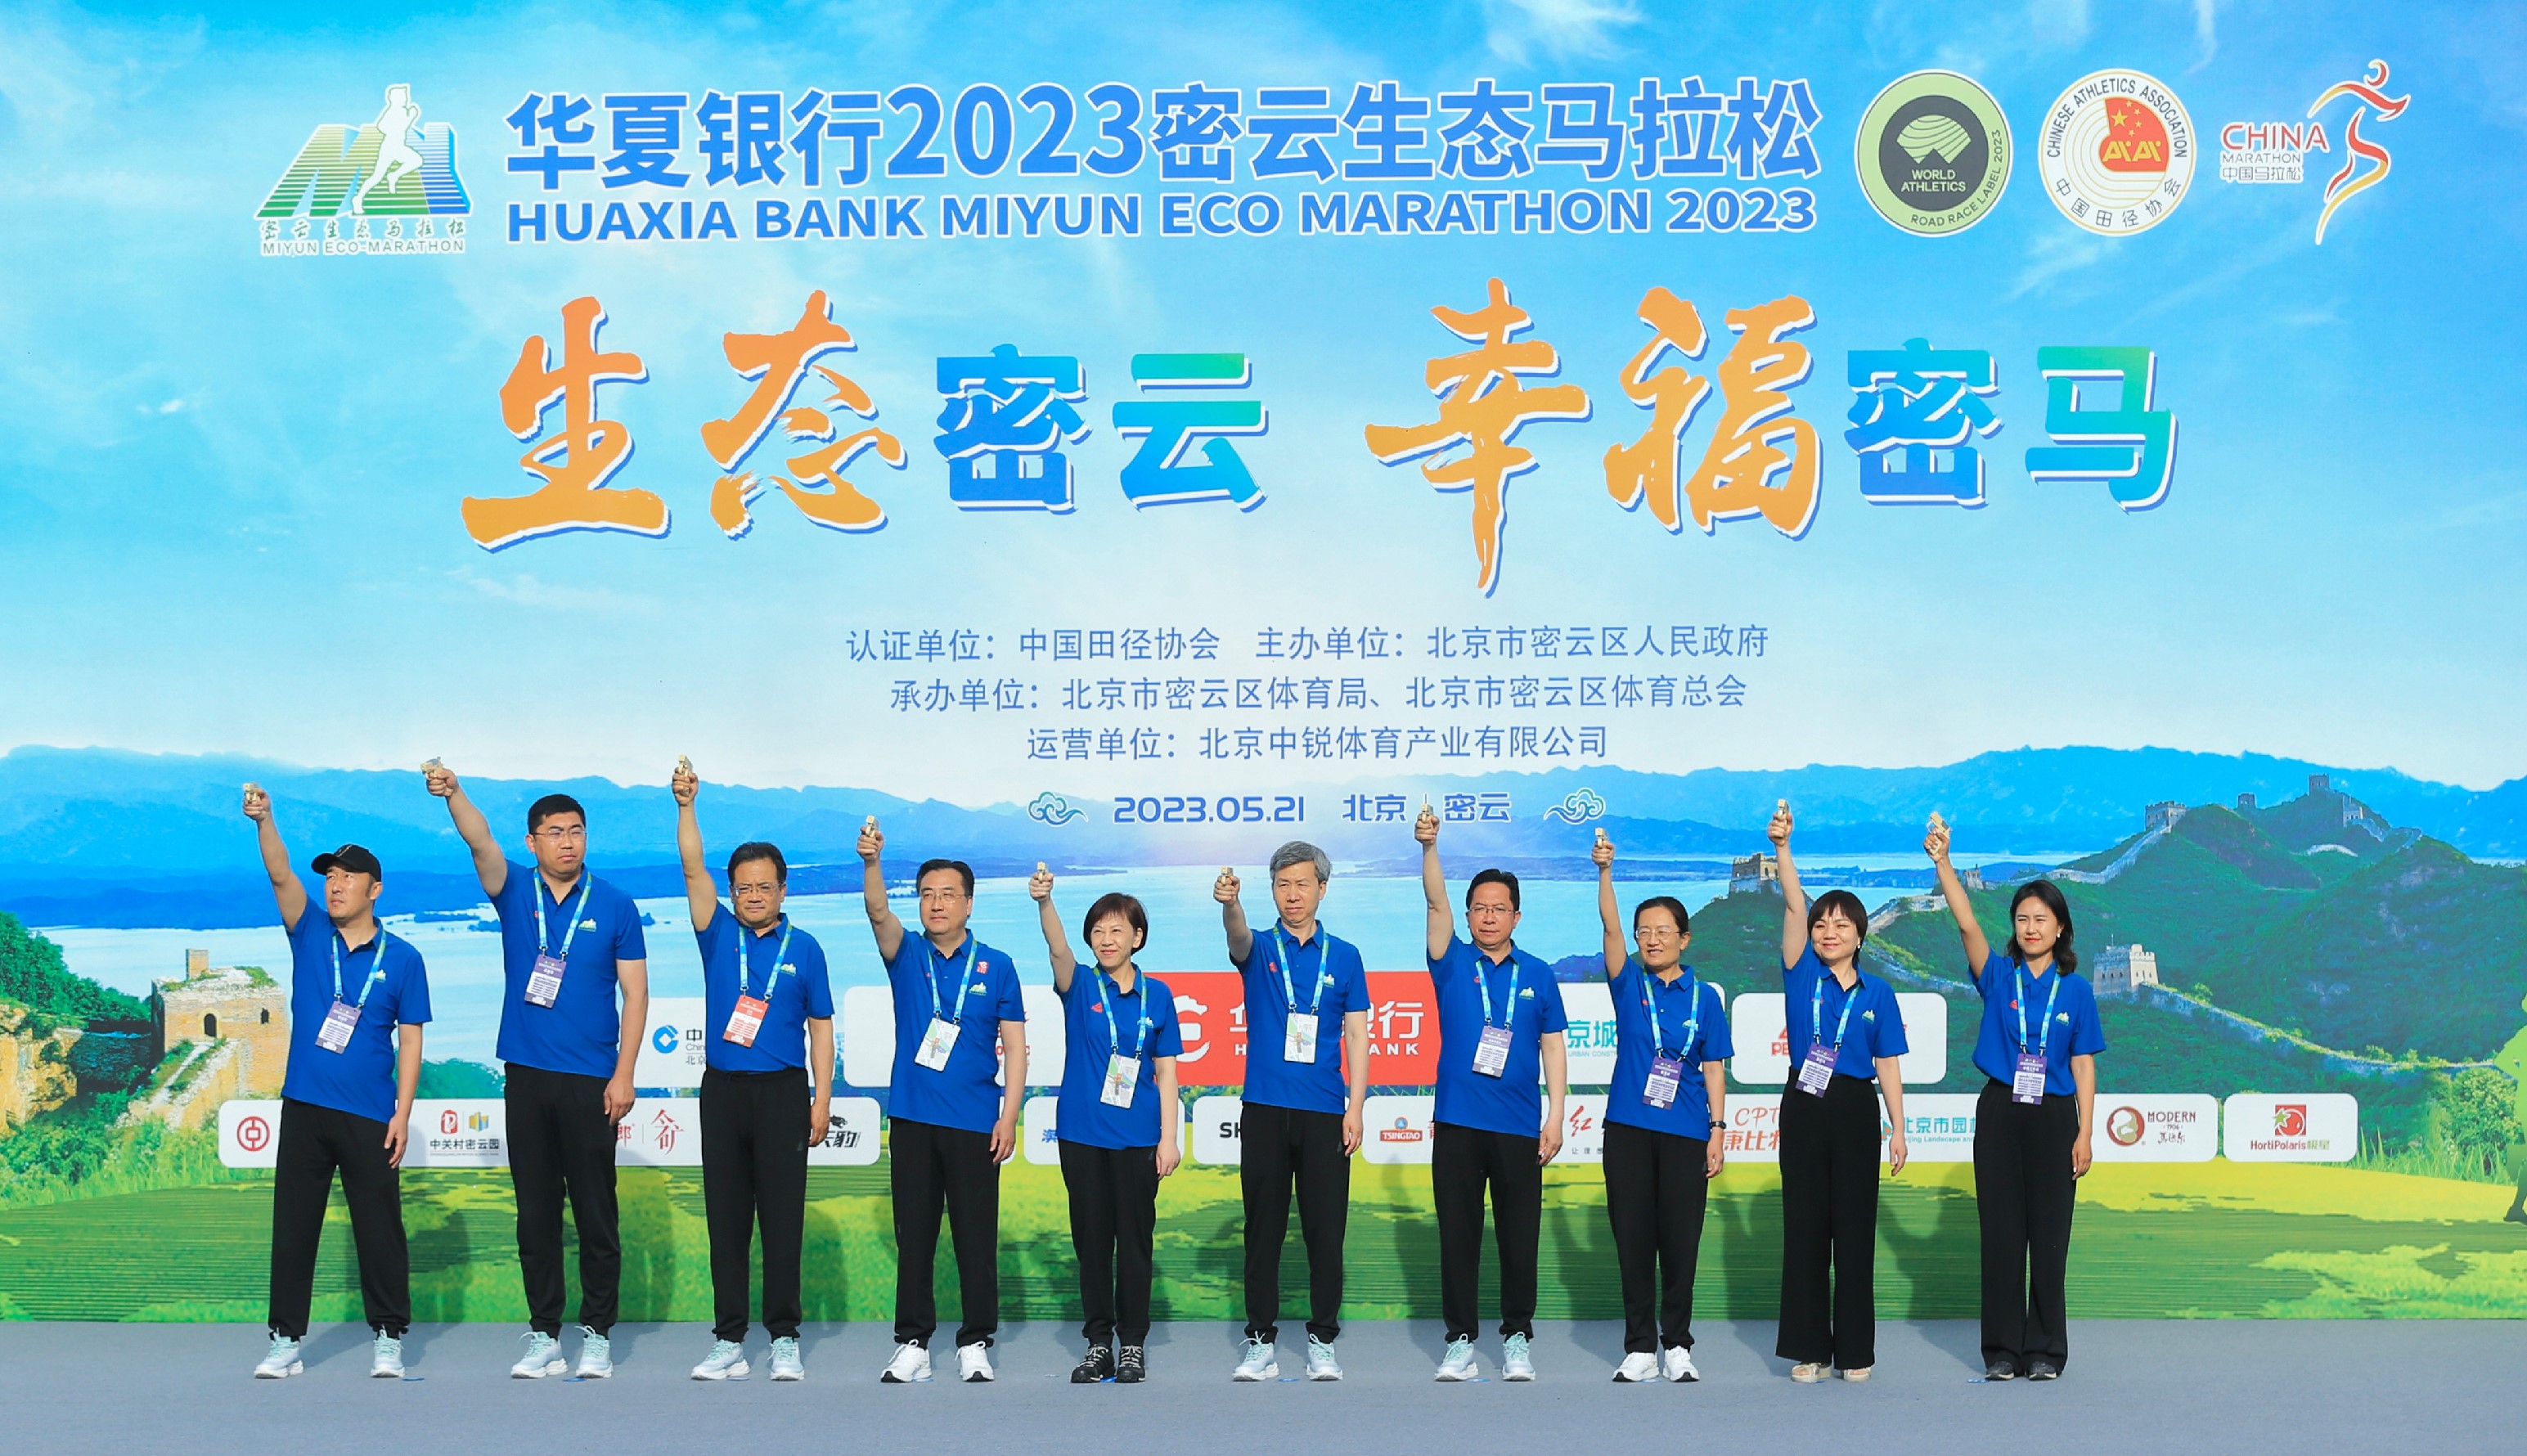 守护绿水青山，开跑奔赴美好未来 ——华夏银行2023密云生态马拉松开跑